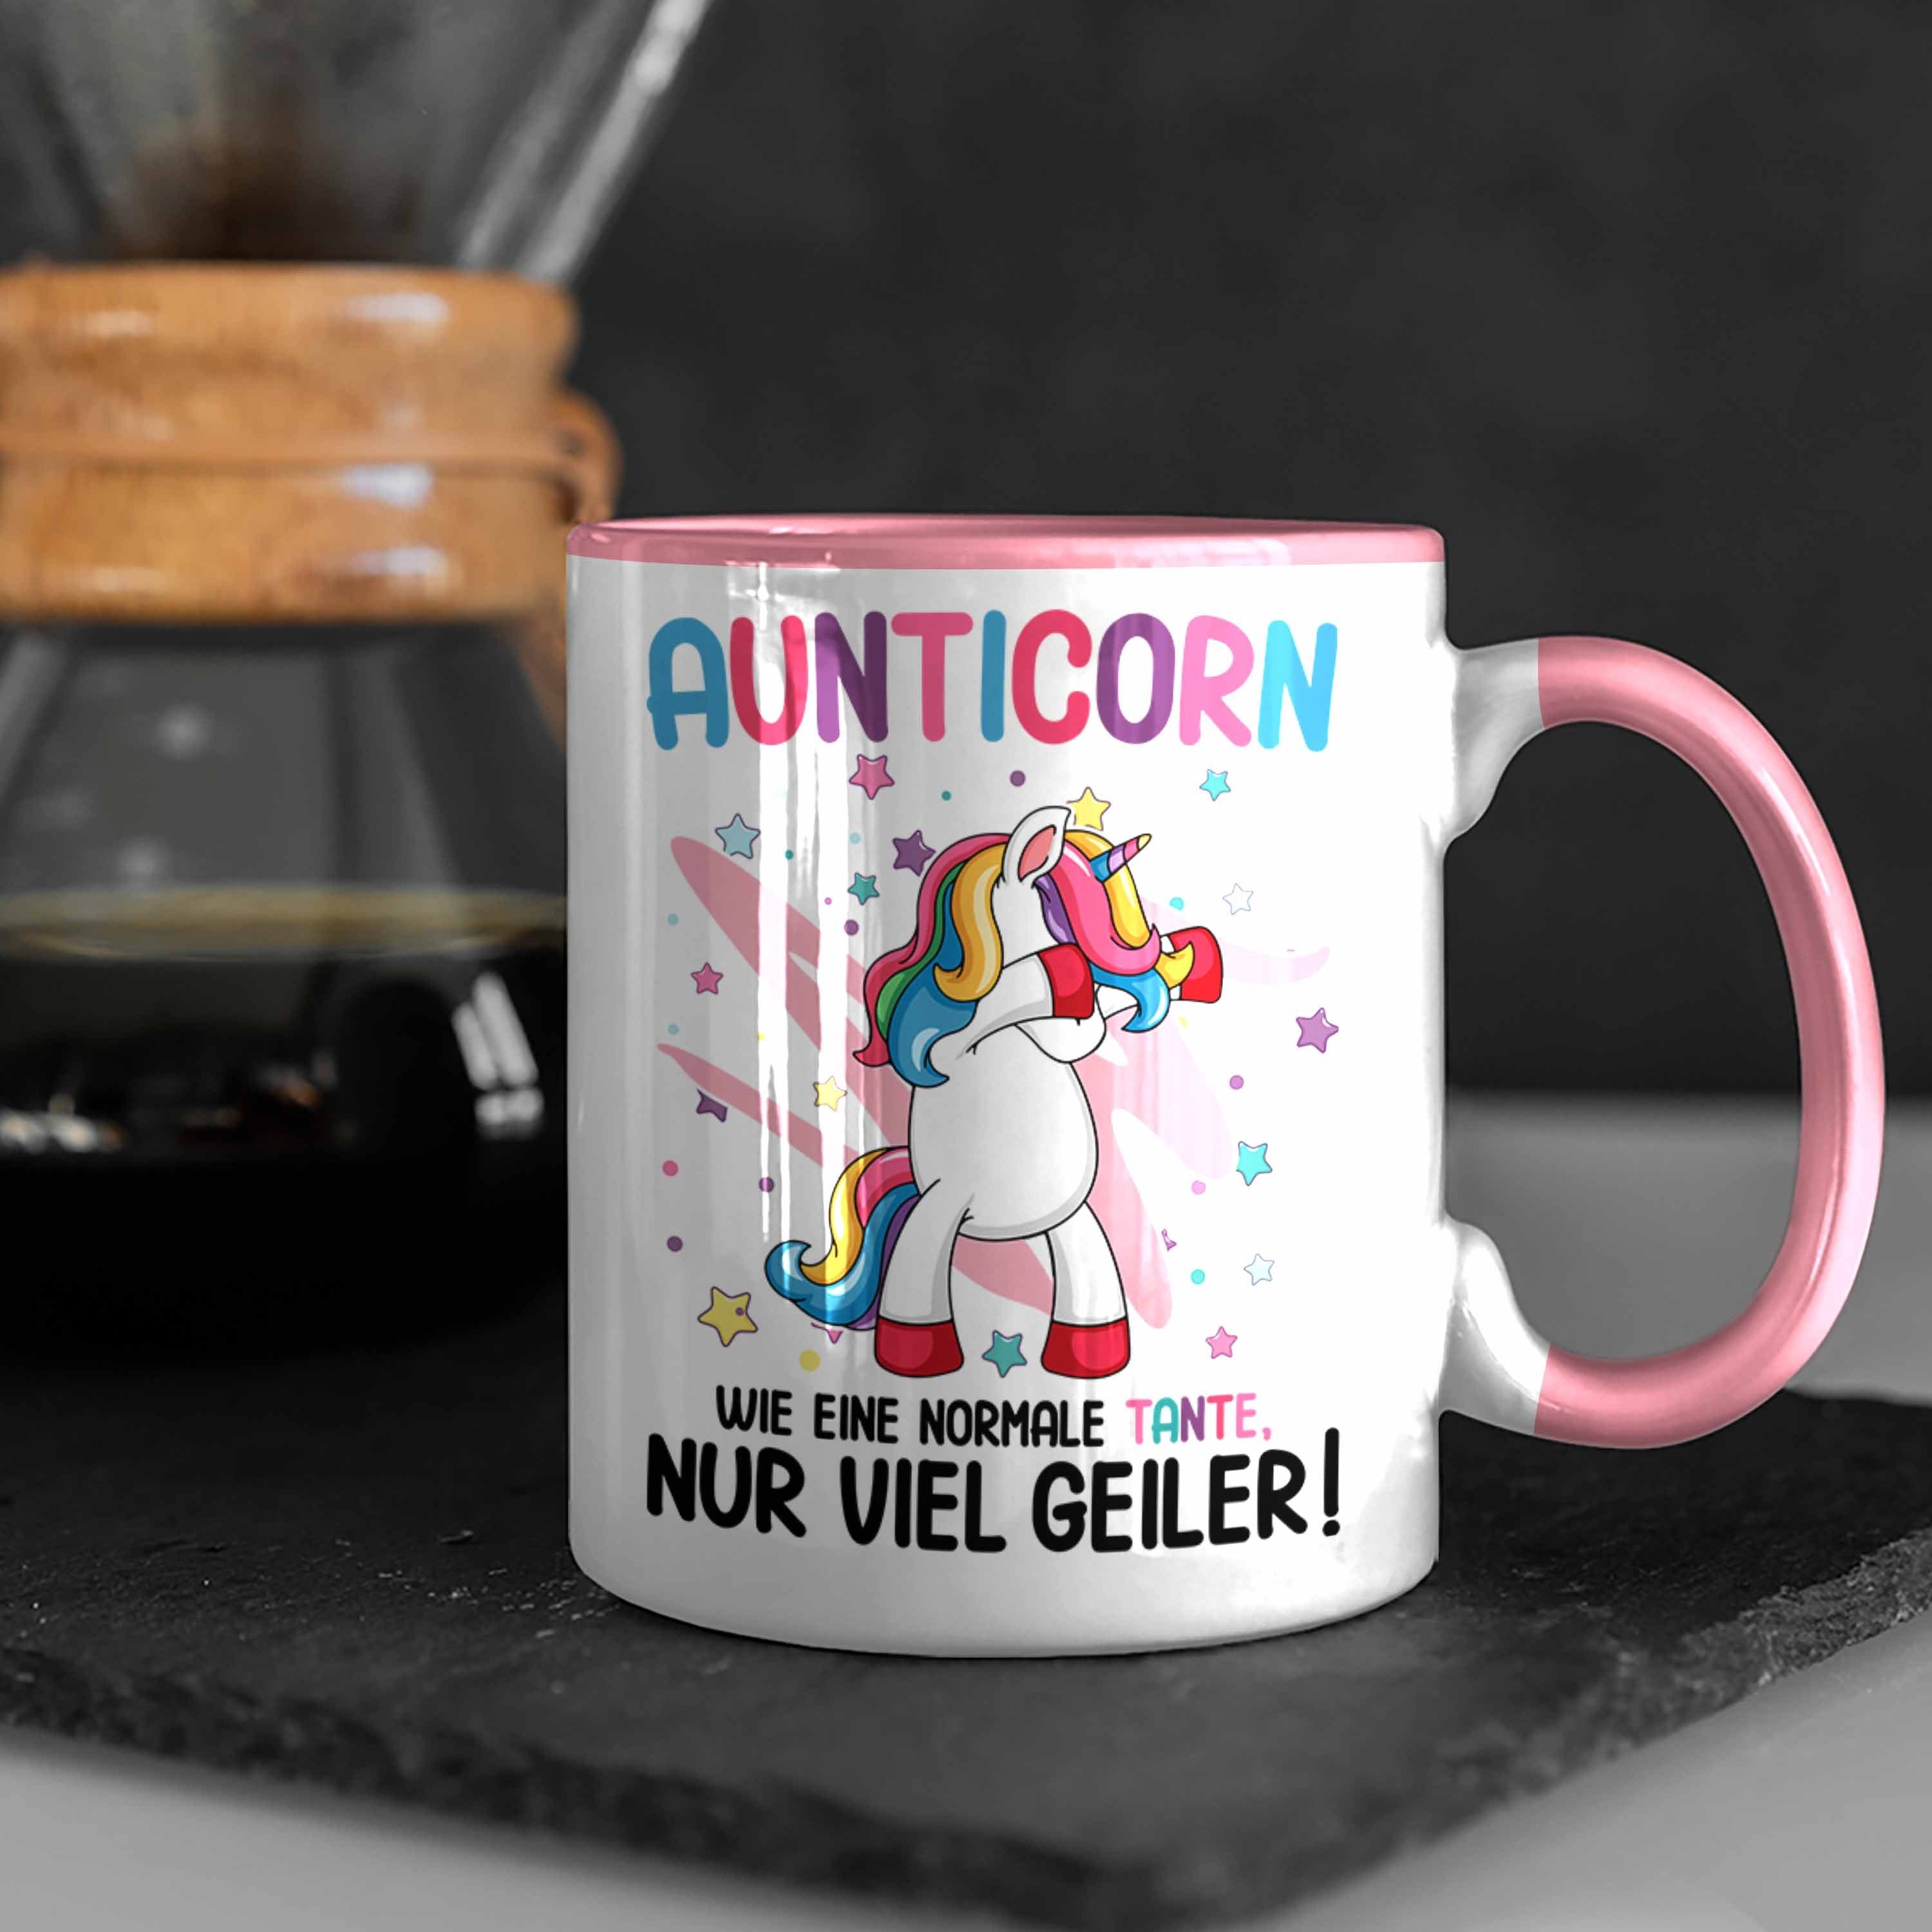 Trendation Tasse Trendation Spruch Tante Lustig Tante Wie Normale Geschenk Beste Einhorn - Geburtstag Aunticorn Rosa Eine